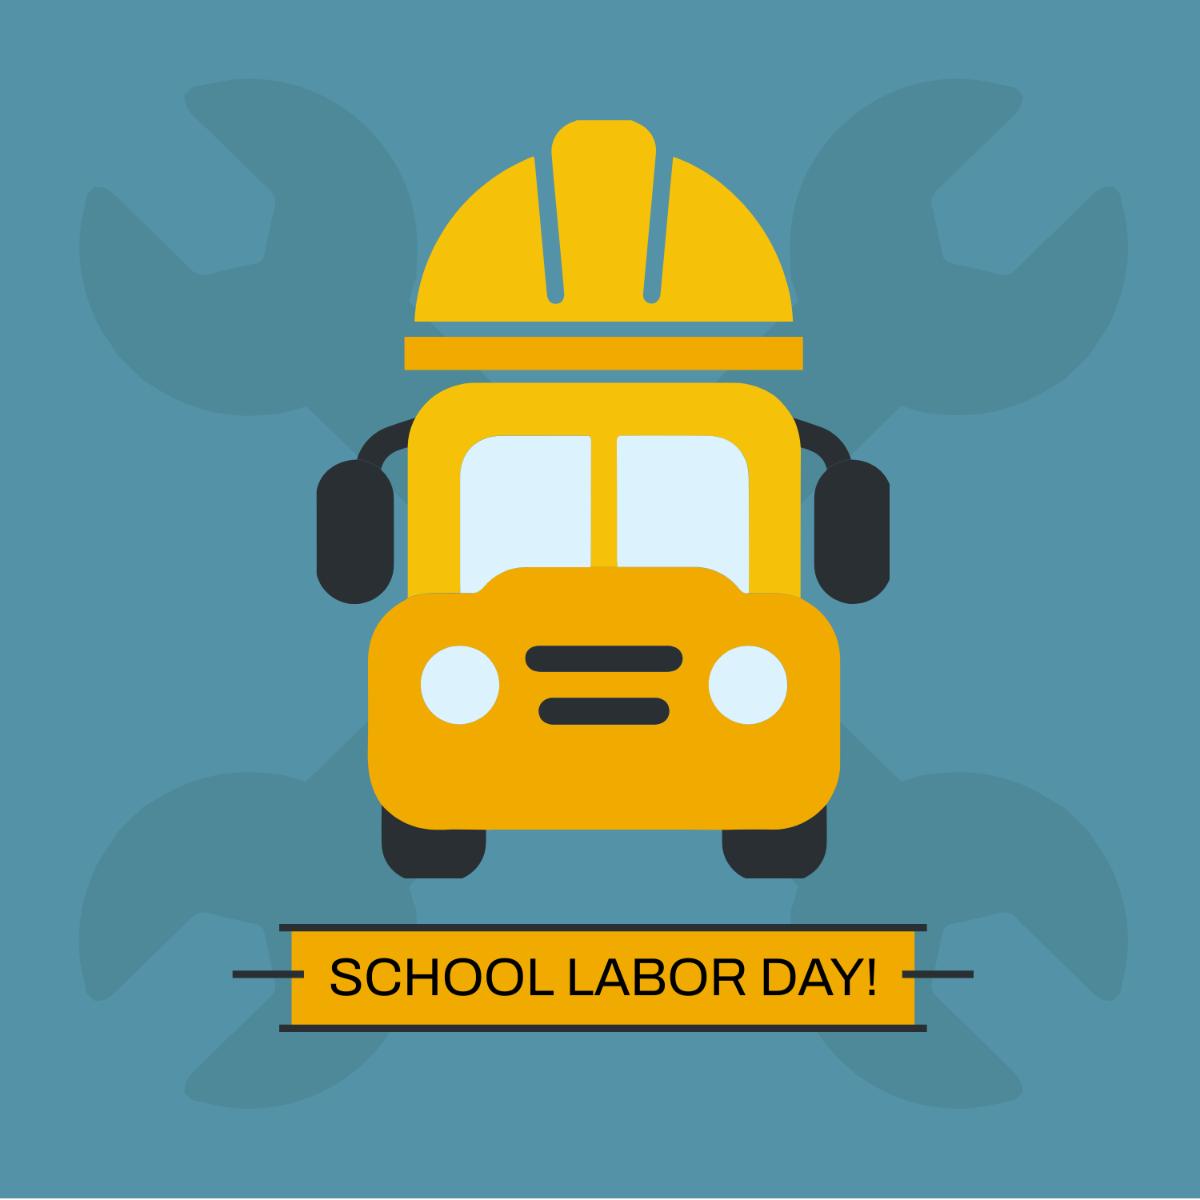 Free Labor Day School Clip Art Template